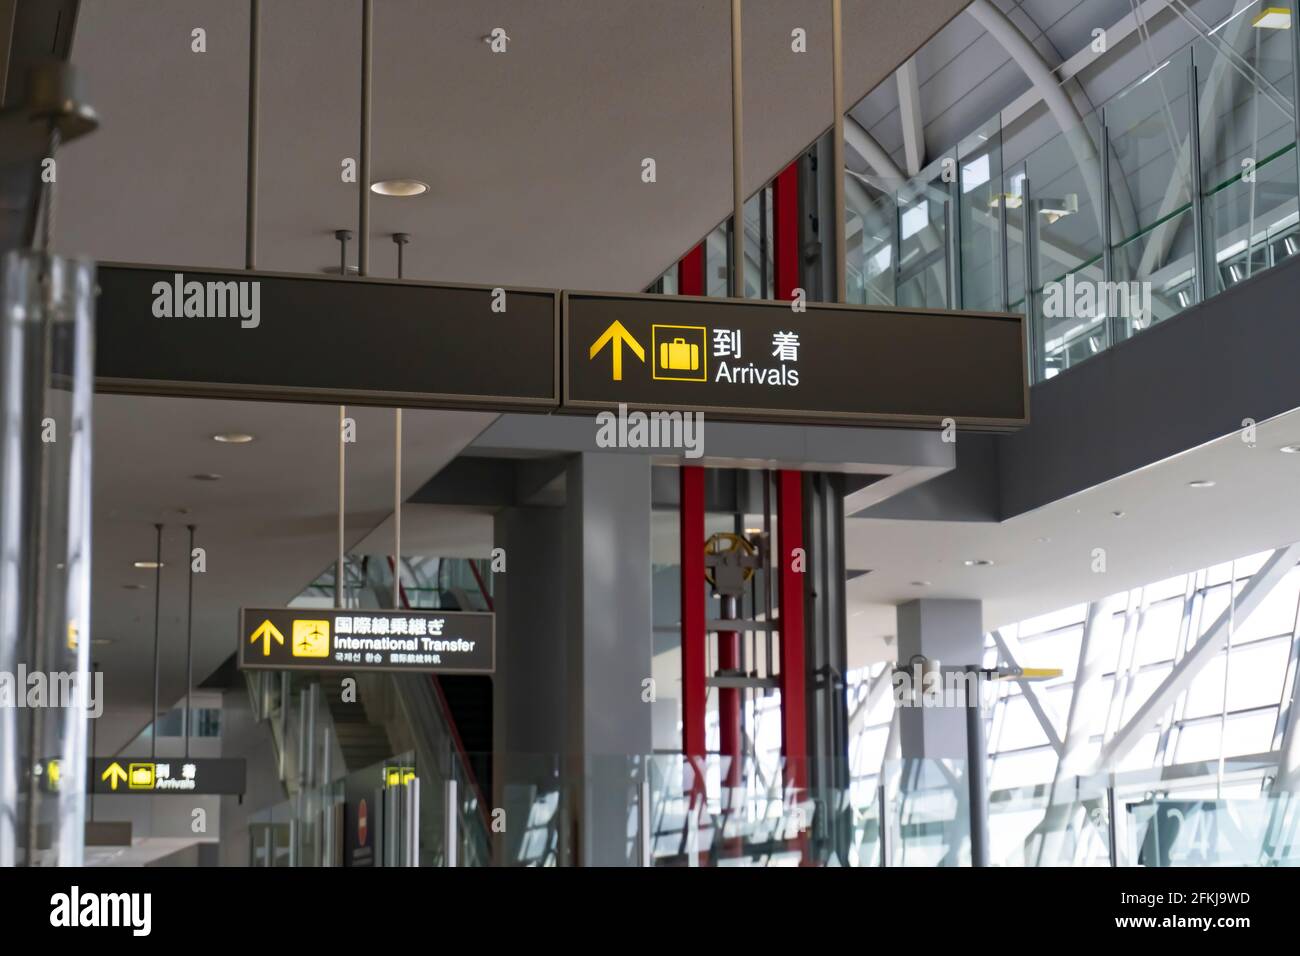 Tokyo, Japon - 28 décembre 2016. Panneau d'arrivée à l'aéroport de Narita, Tokyo. L'aéroport de Narita est un aéroport international qui dessert la grande région de Tokyo. Banque D'Images